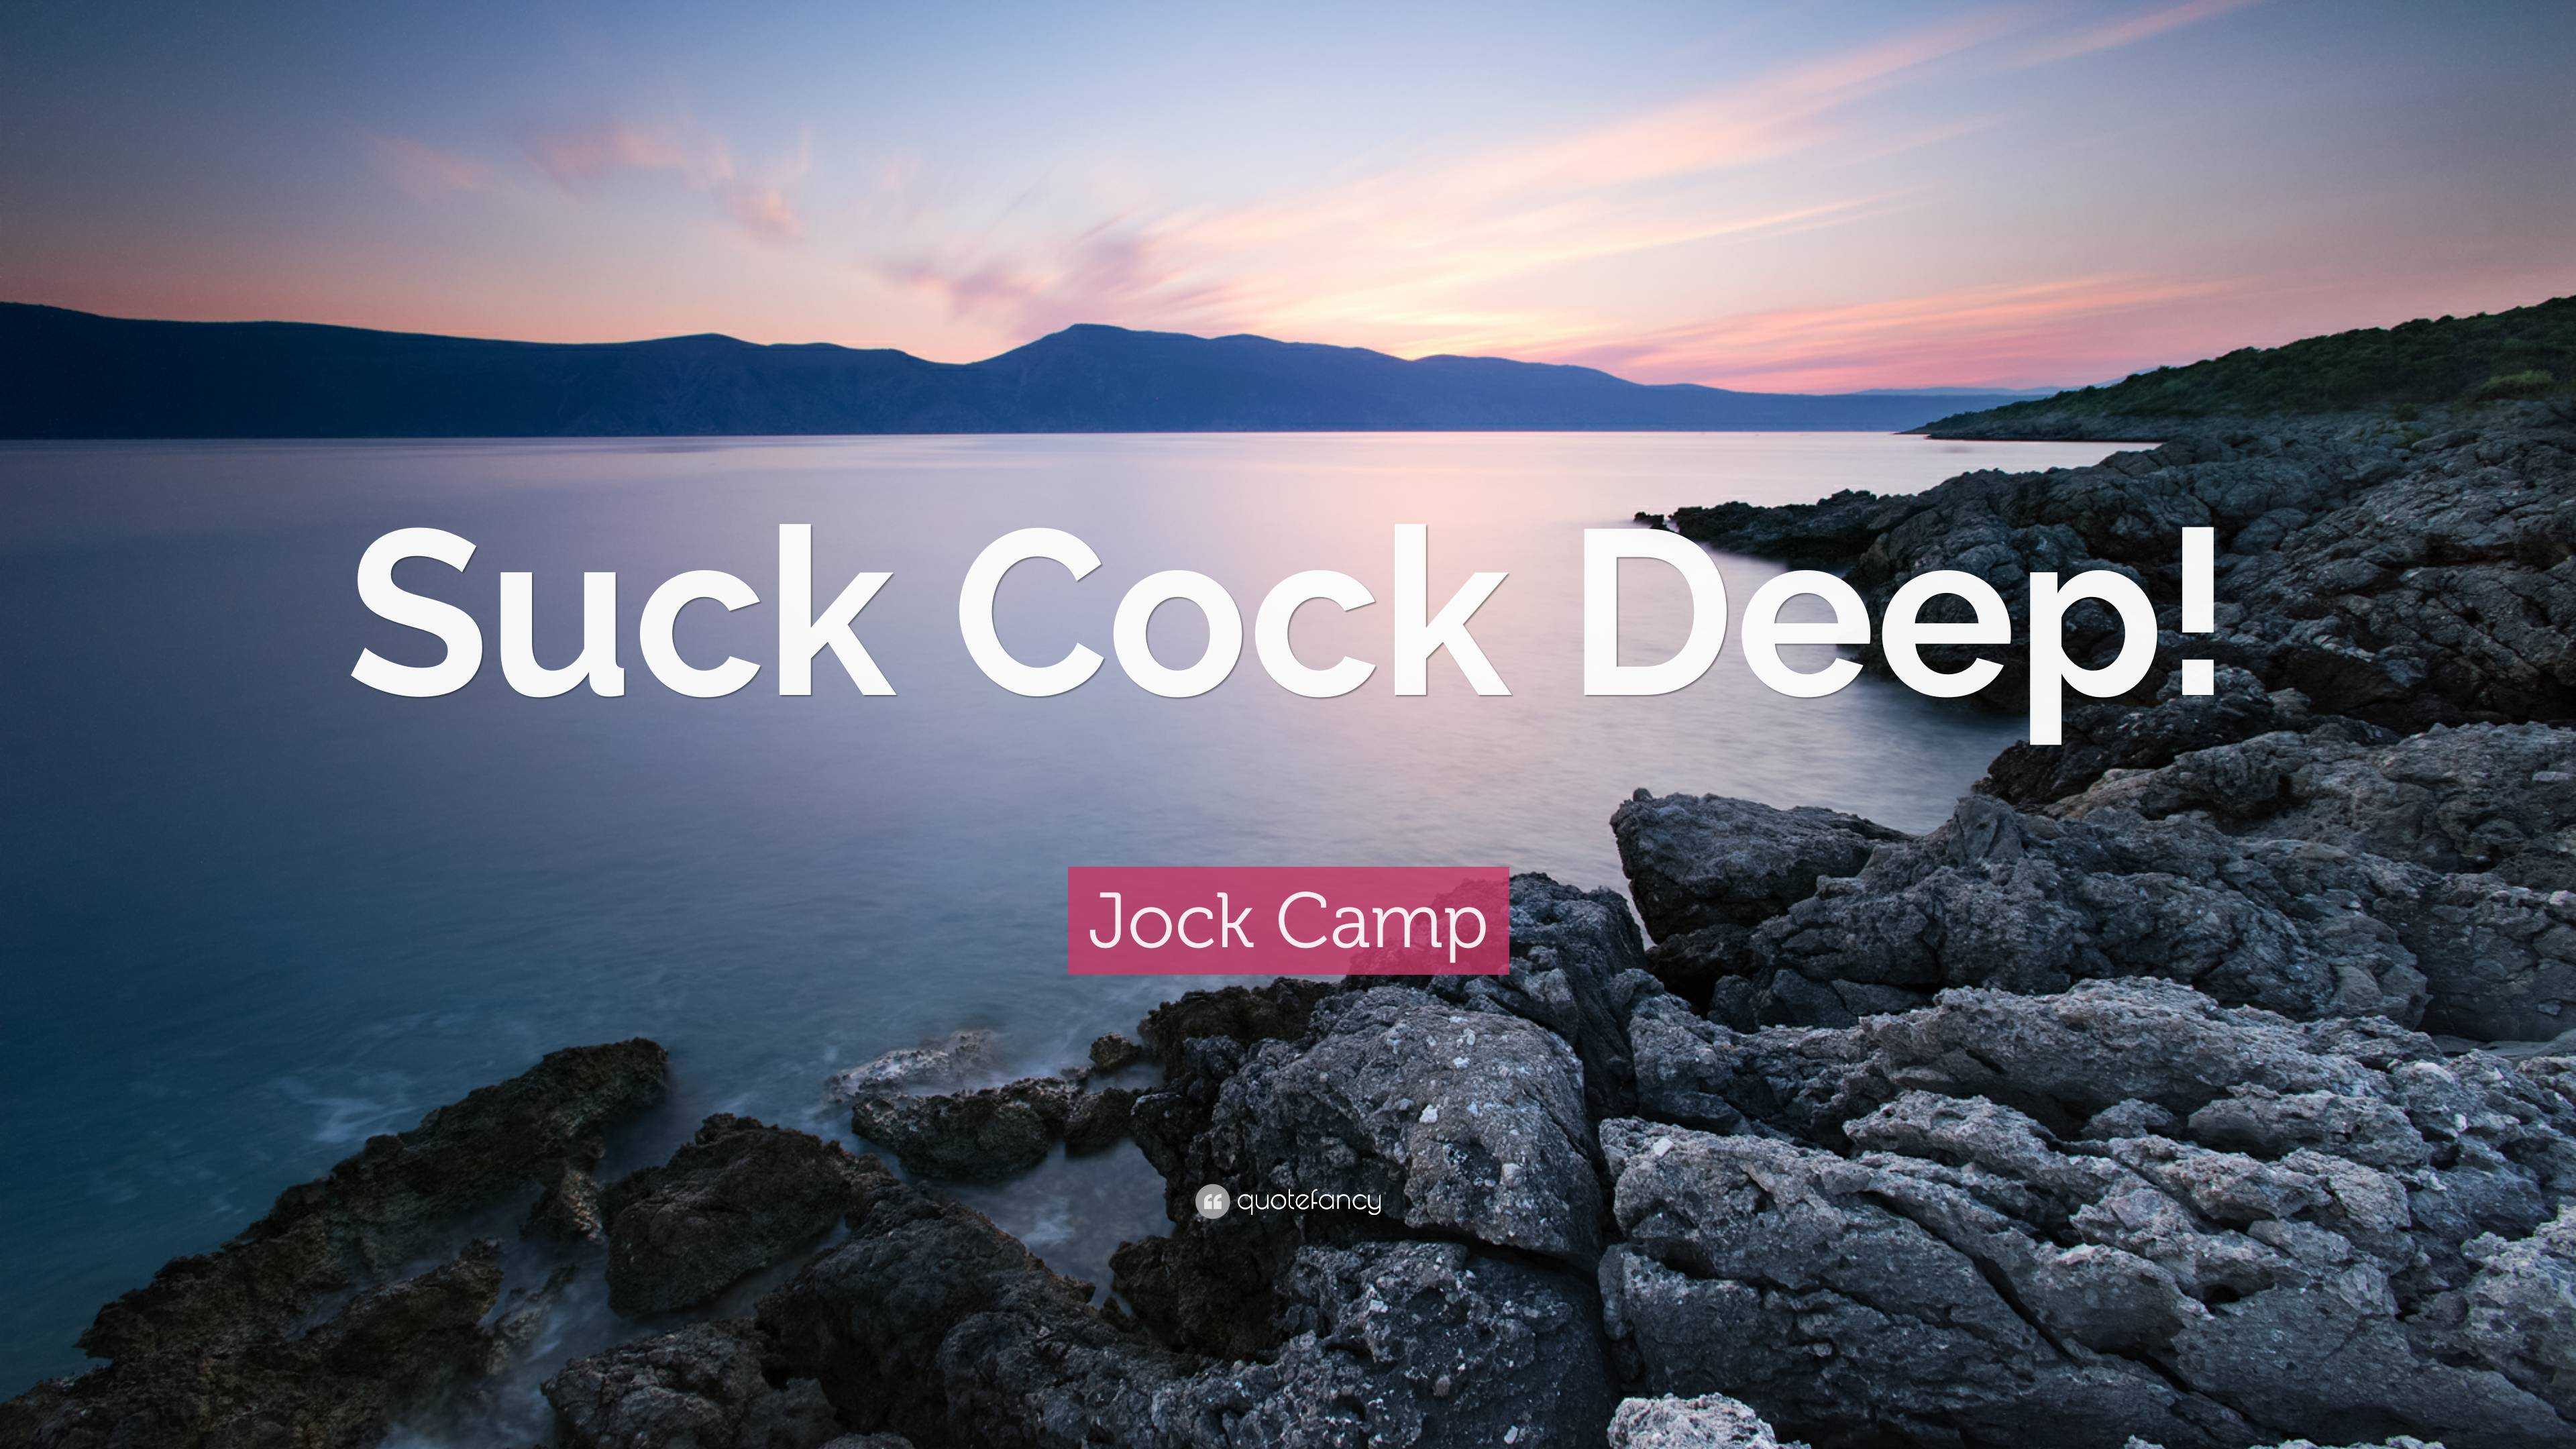 Jock Camp Quote “Suck Cock Deep!”